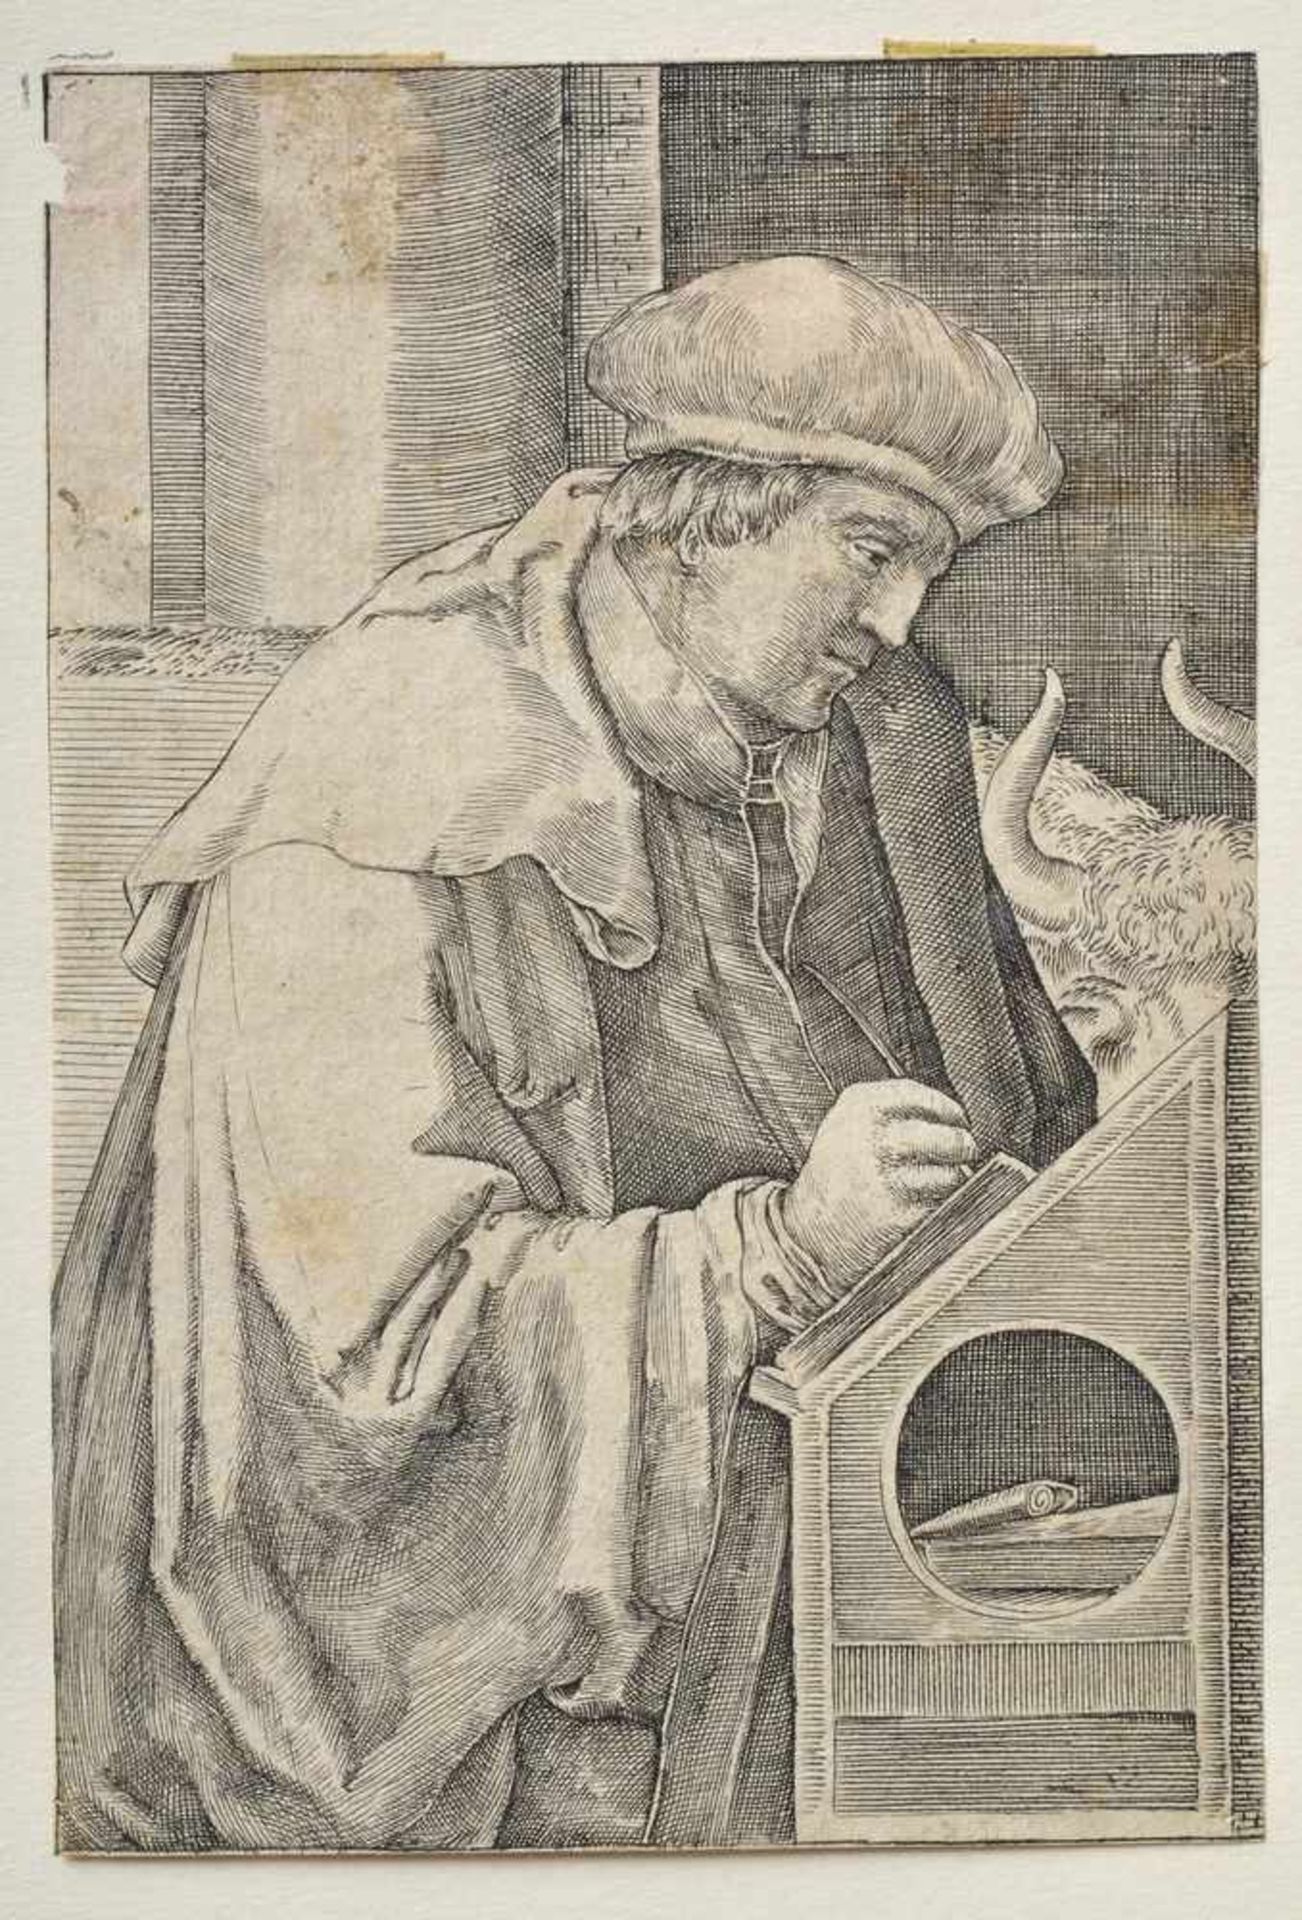 Leyden, Lucas von (1494-1533) "Der Evangelist Lucas", Radierung, 11,5x7,5cm, o.l. beschädigt/